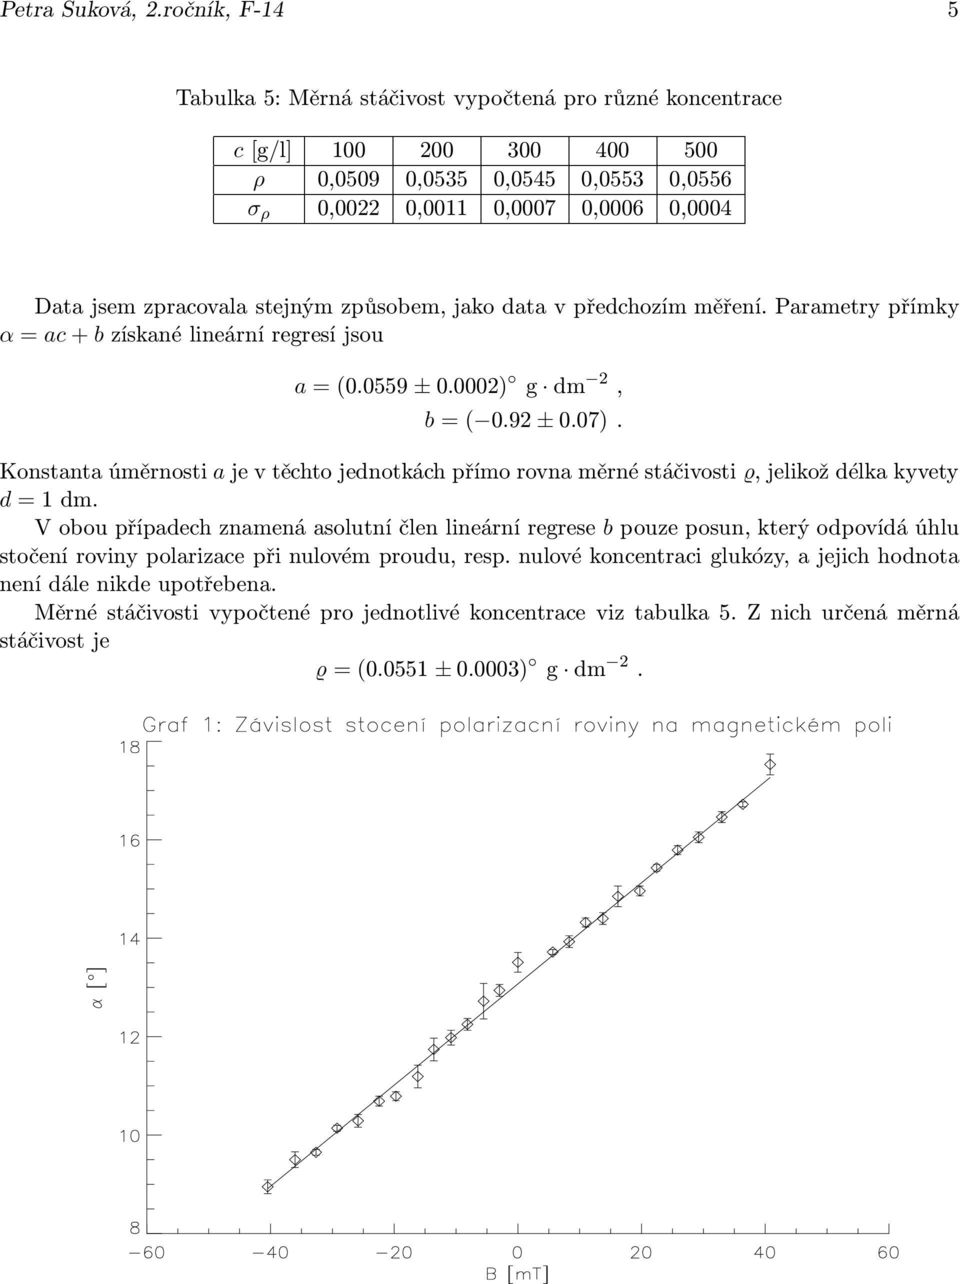 stejným způsobem, jako data v předchozím měření. Parametry přímky α=ac+bzískanélineárníregresíjsou a=(0.0559 ±0.0002) g dm 2, b=( 0.92 ±0.07).